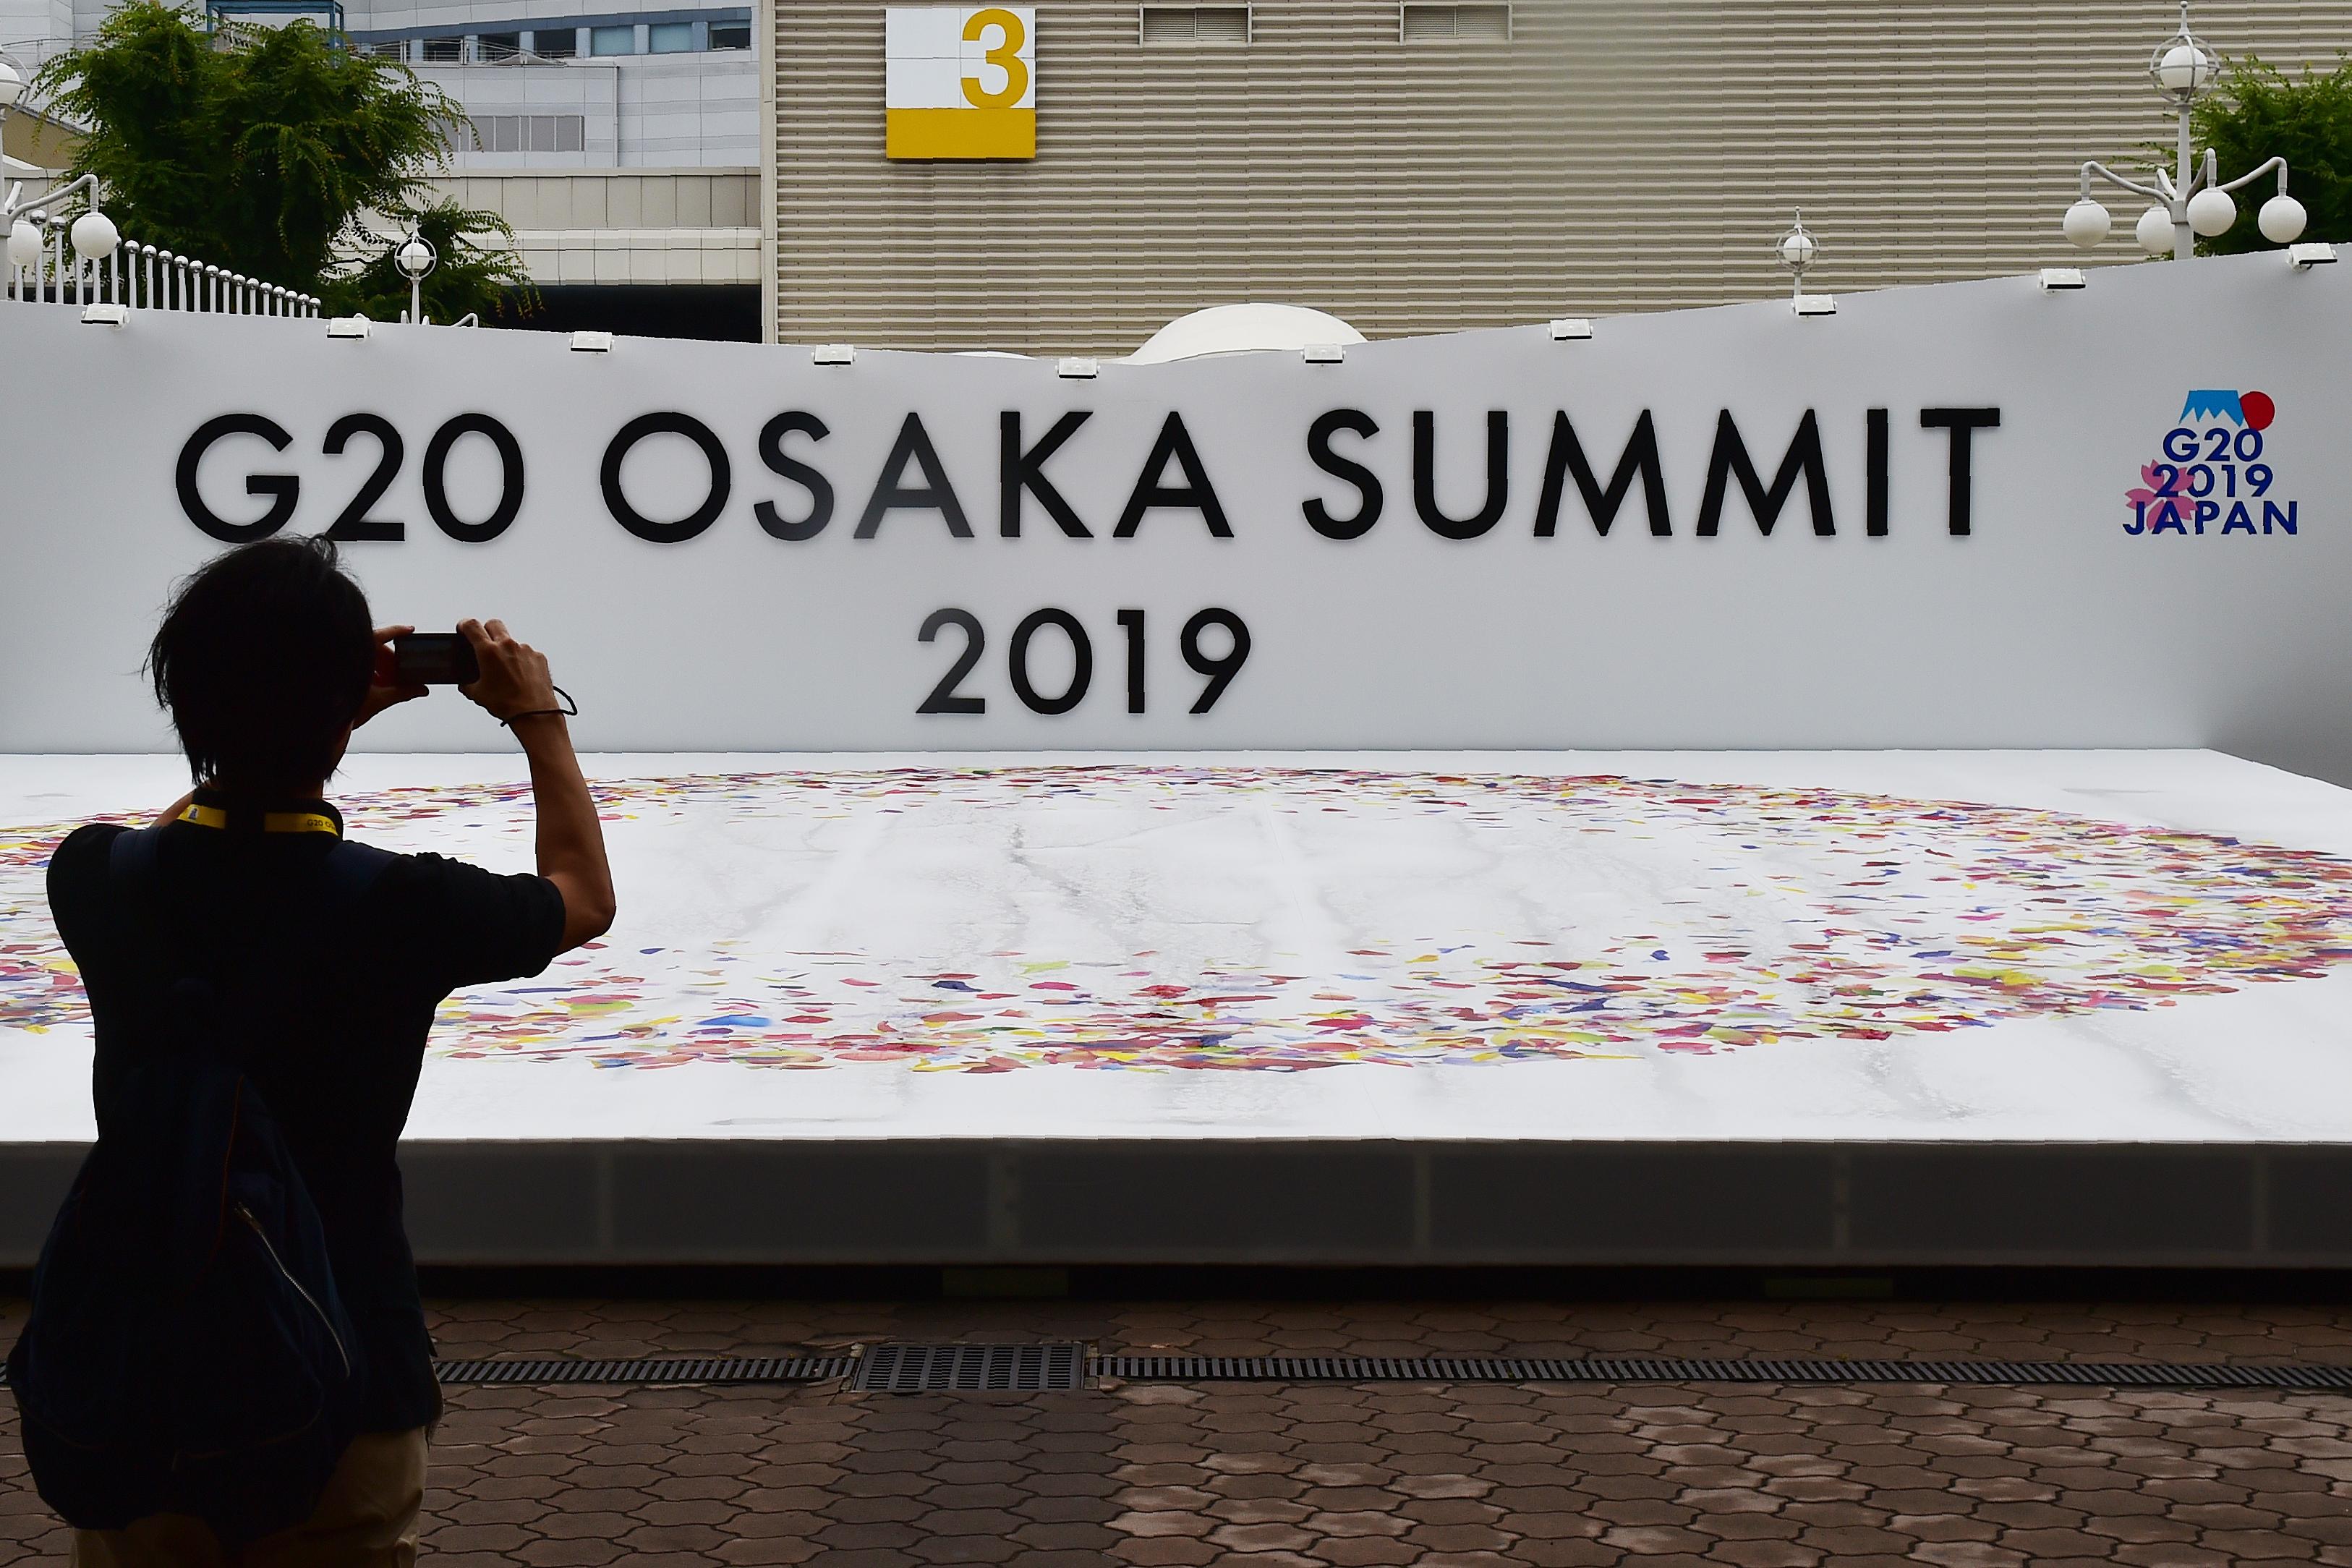 G20 sastanak održat će se u Osaki - Avaz